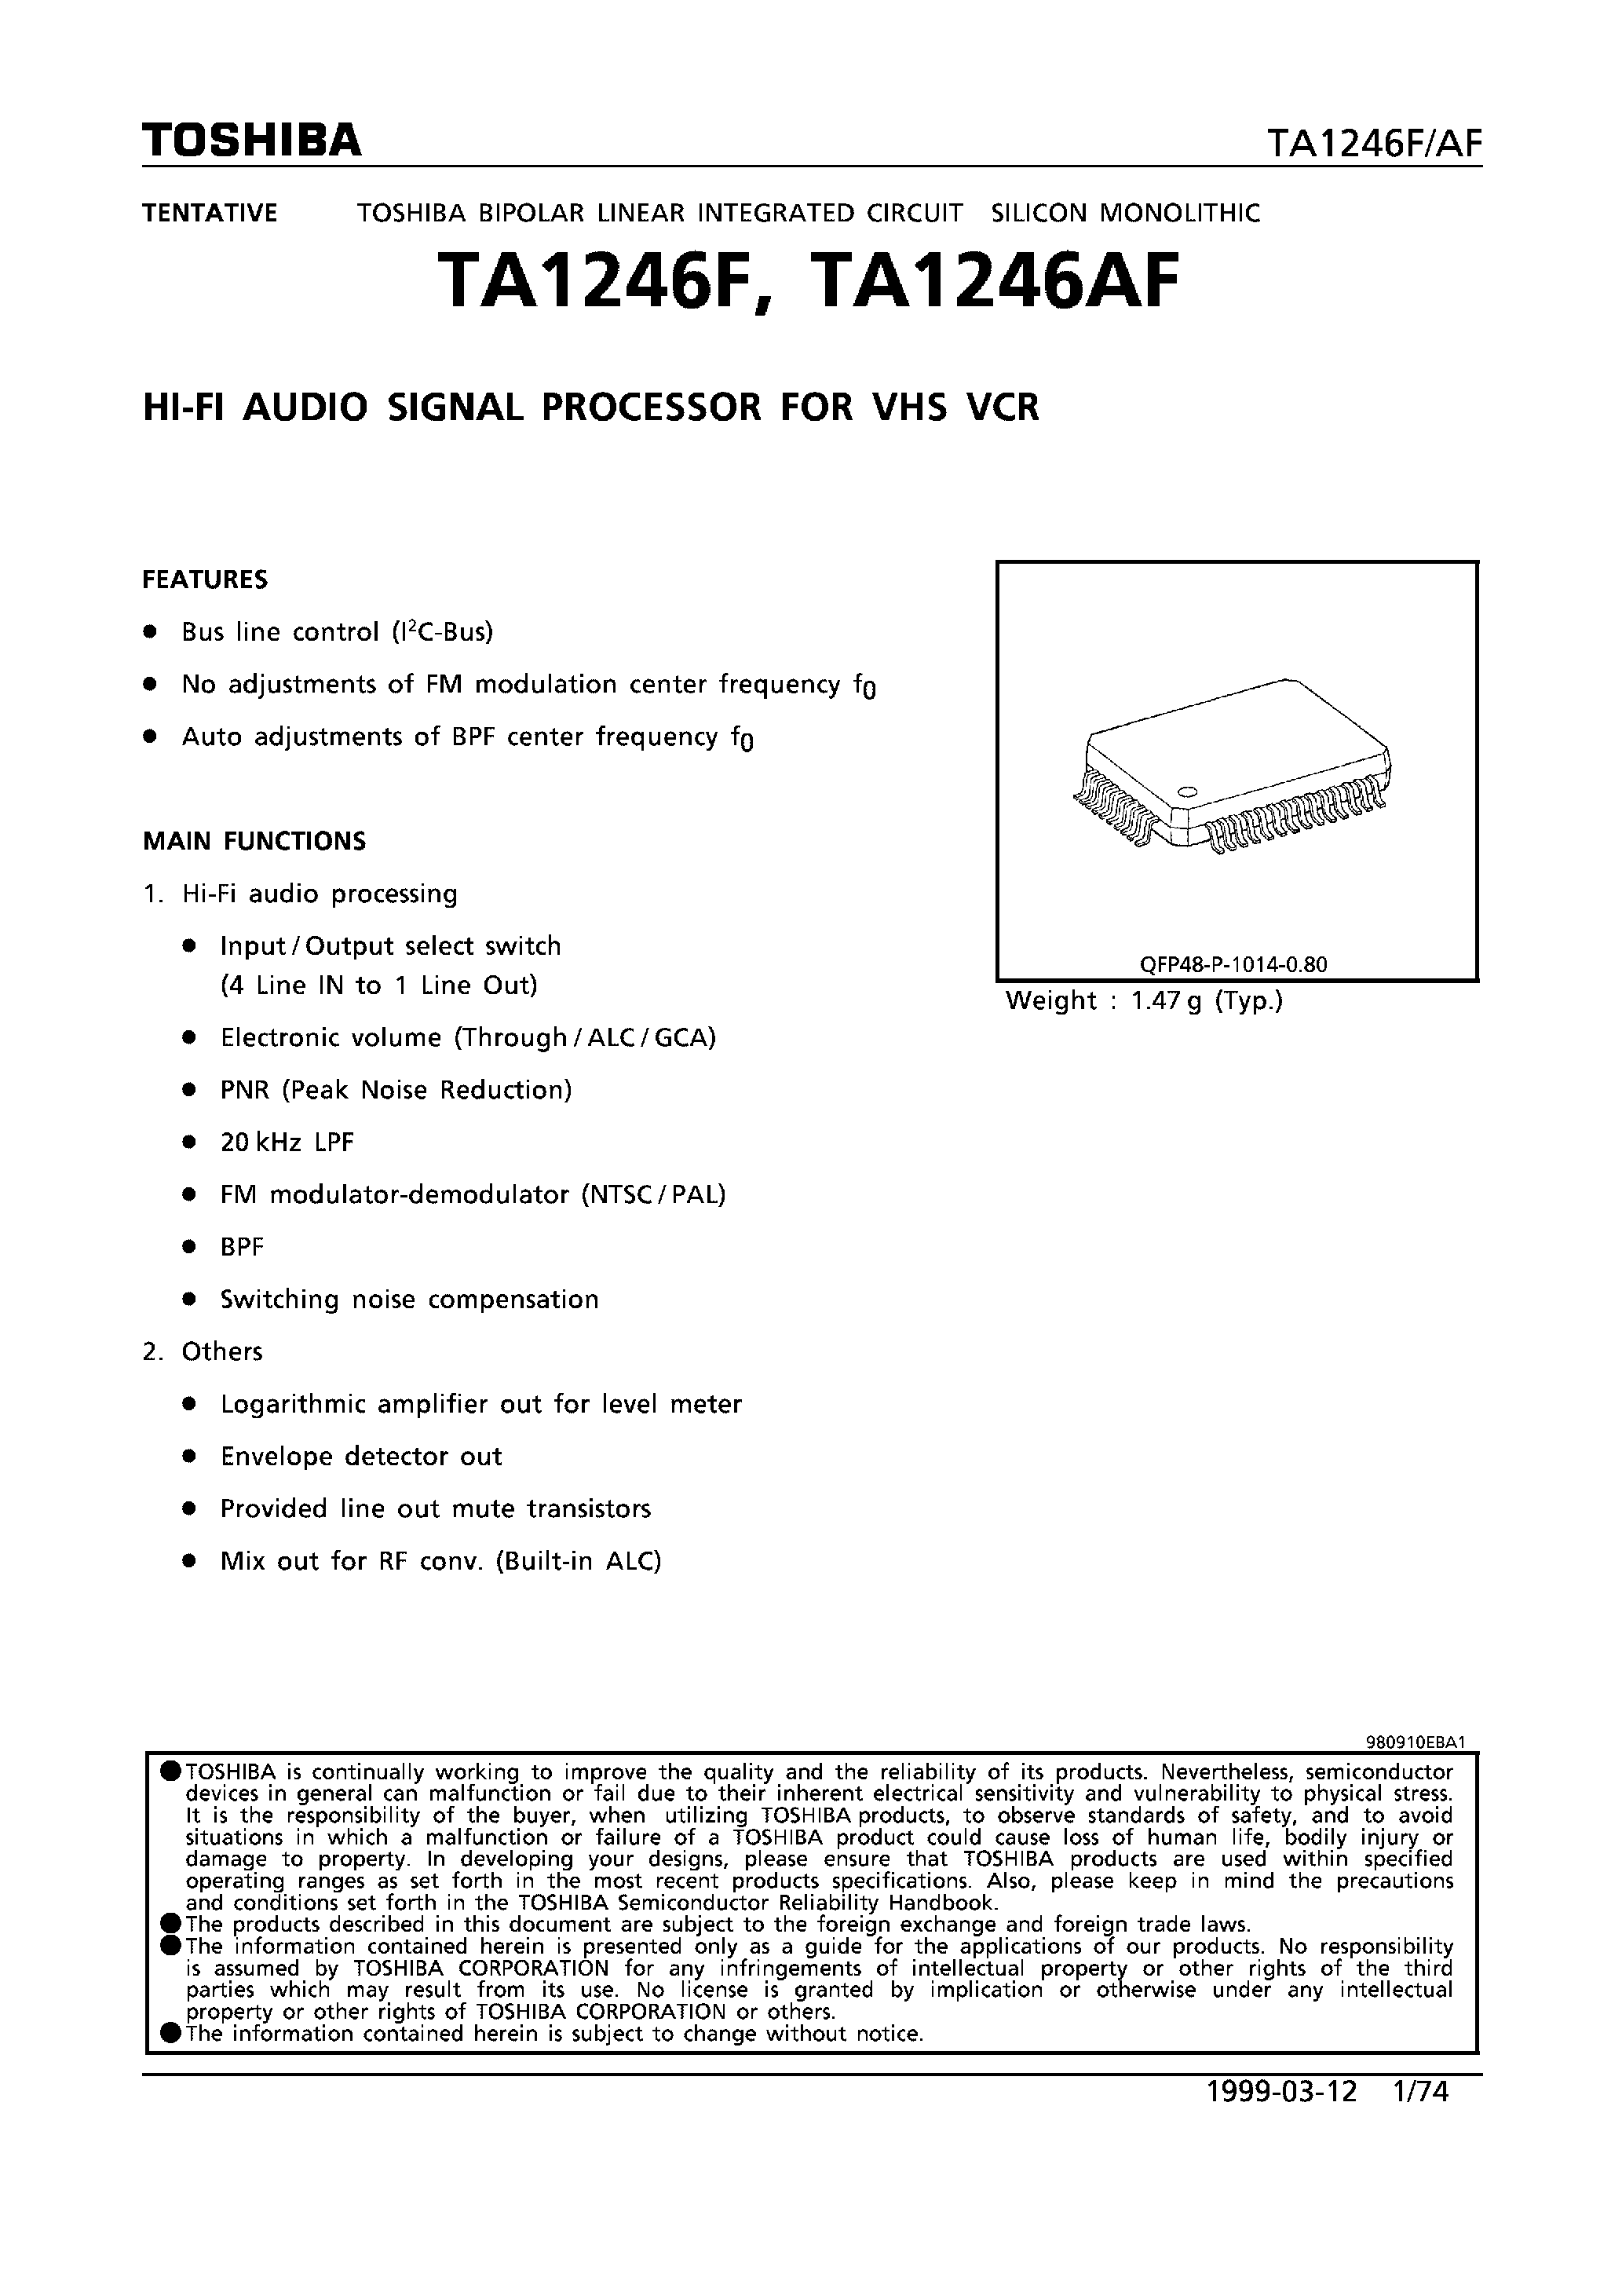 Даташит TA1246 - HI-FI AUDIO SIGNAL PROCESSOR FOR VHS VCR страница 1